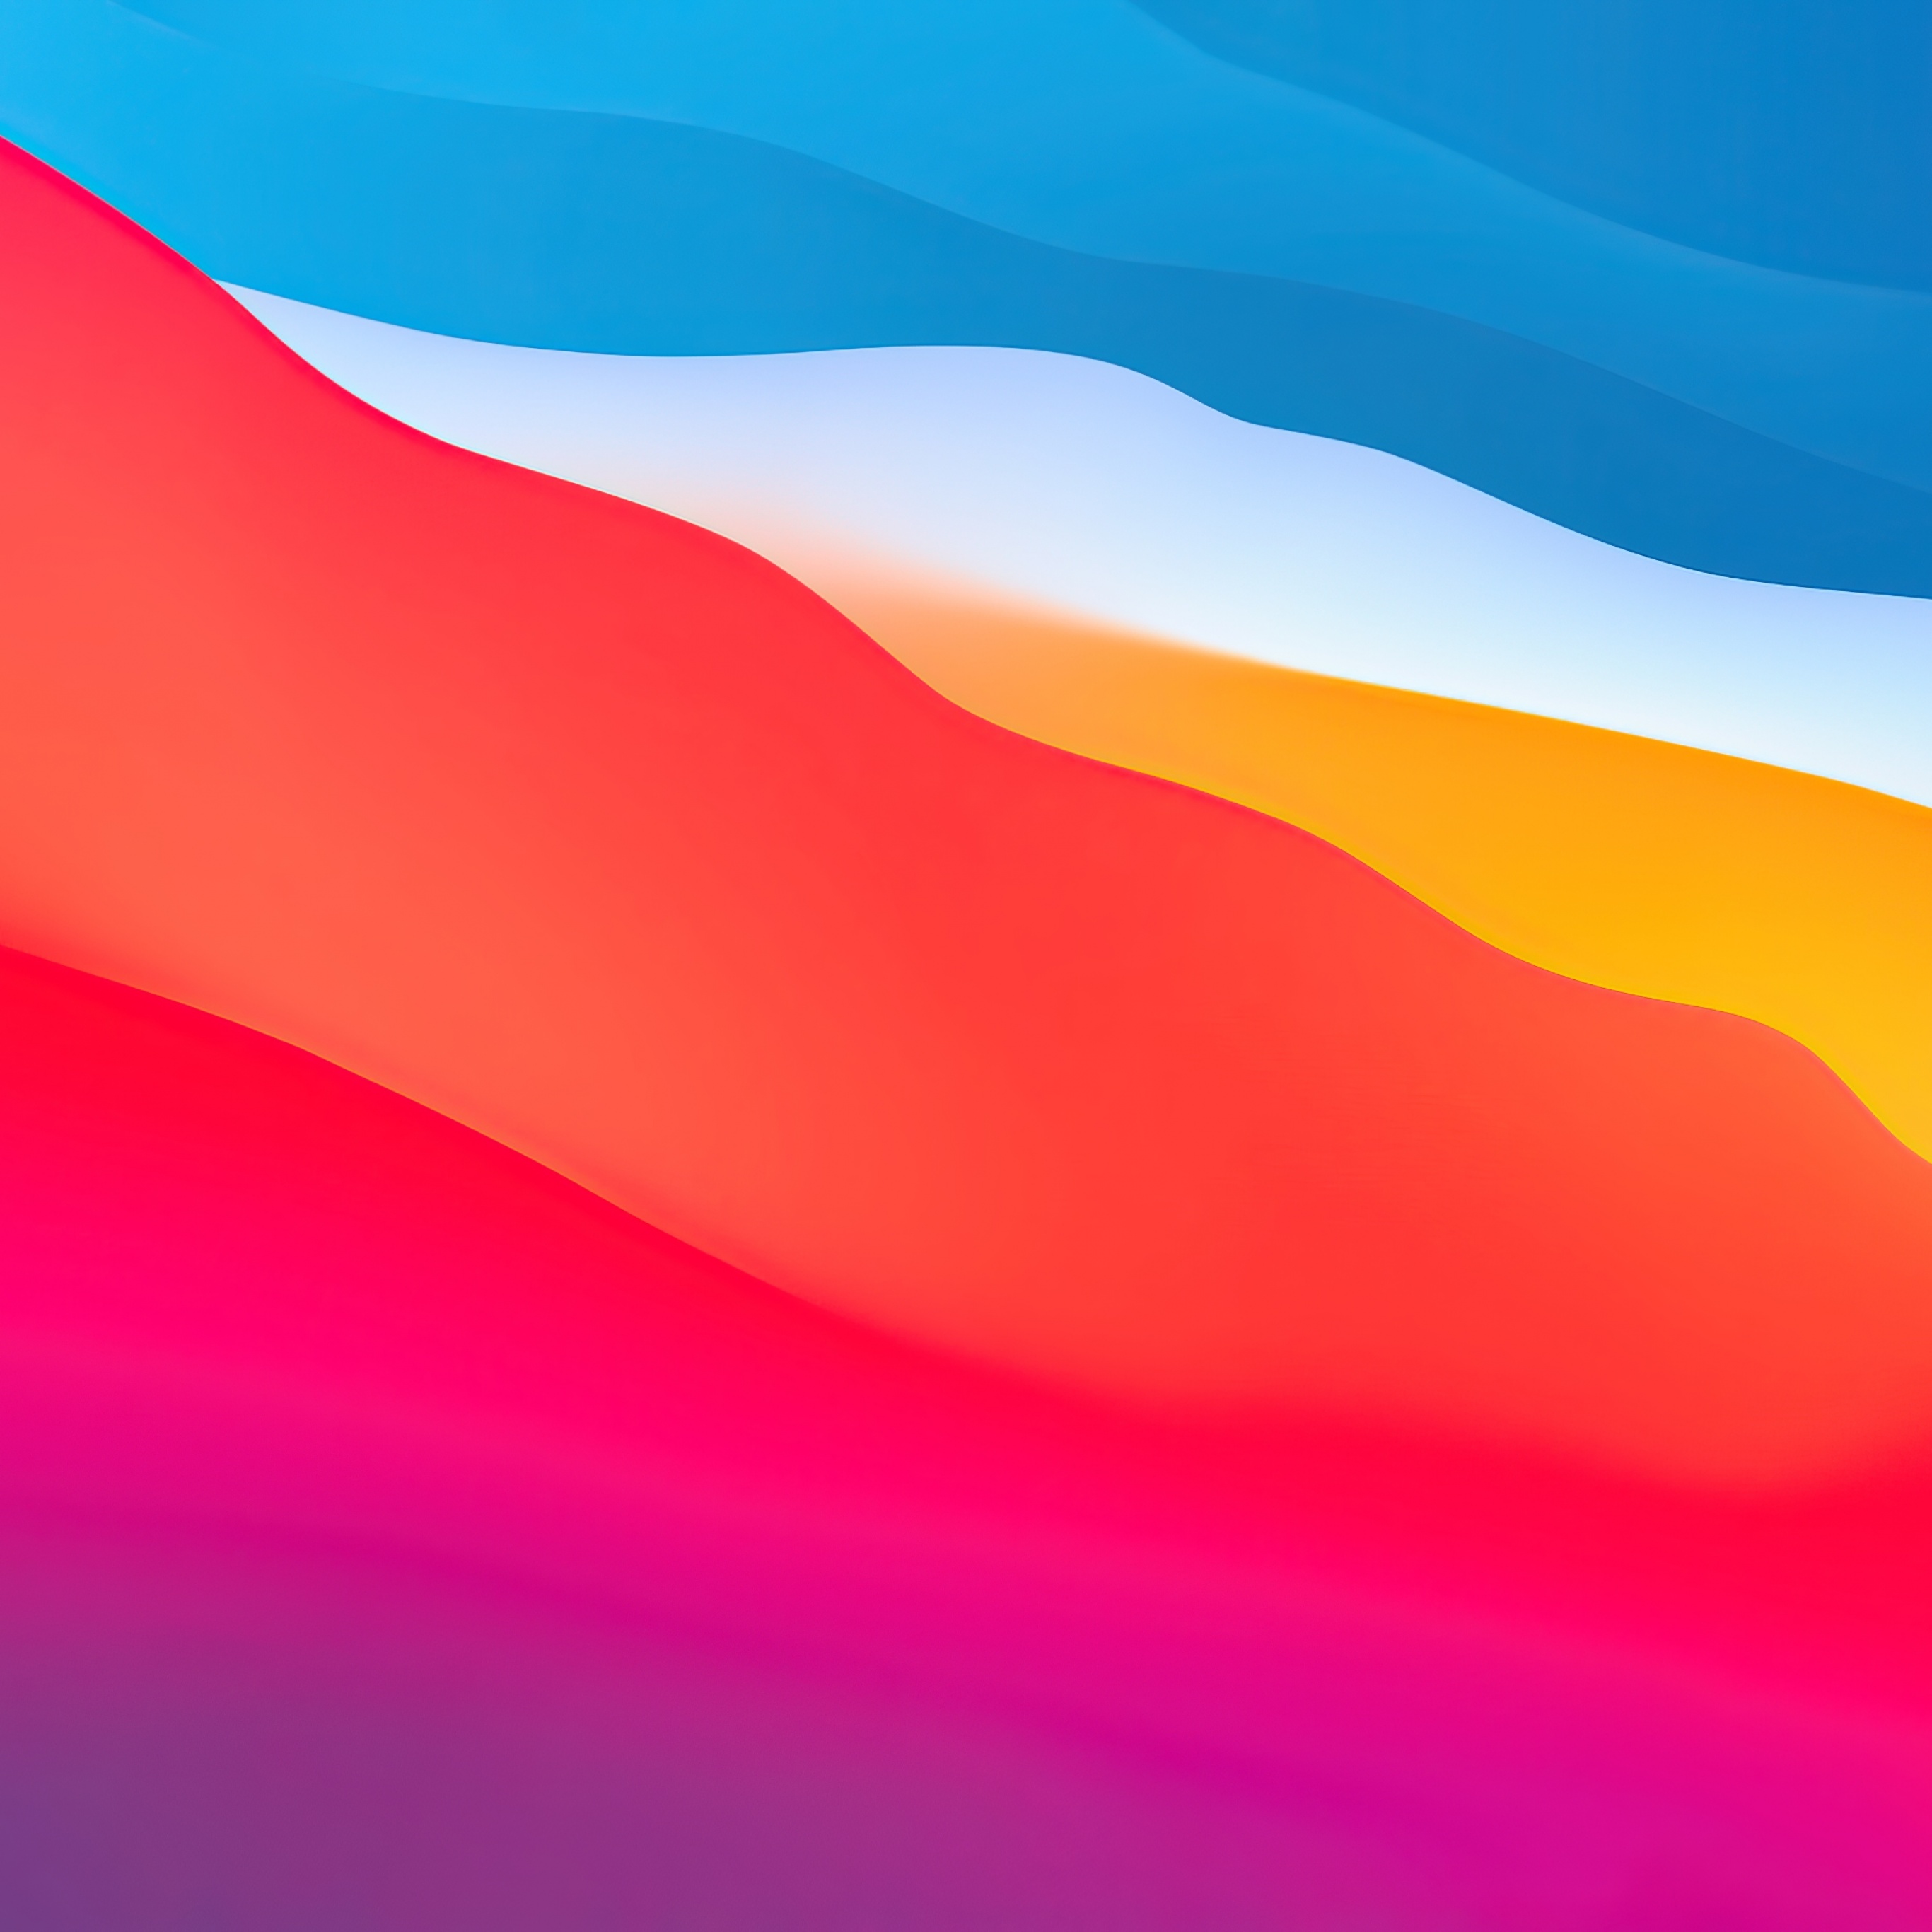 Tiếp tục với macOS Big Sur Wallpaper 4K, đây là những bức hình nền độc đáo và hoàn hảo cho người dùng đam mê thiên nhiên và công nghệ. Hình ảnh sắc nét và sống động sẽ đưa bạn vào một thế giới hoàn toàn mới, nơi tựa như bạn đang thực sự đứng trước mặt trời lặn hoặc chạm tay vào những cánh hoa hồng thơm ngát. Hãy truy cập ngay để thưởng thức!